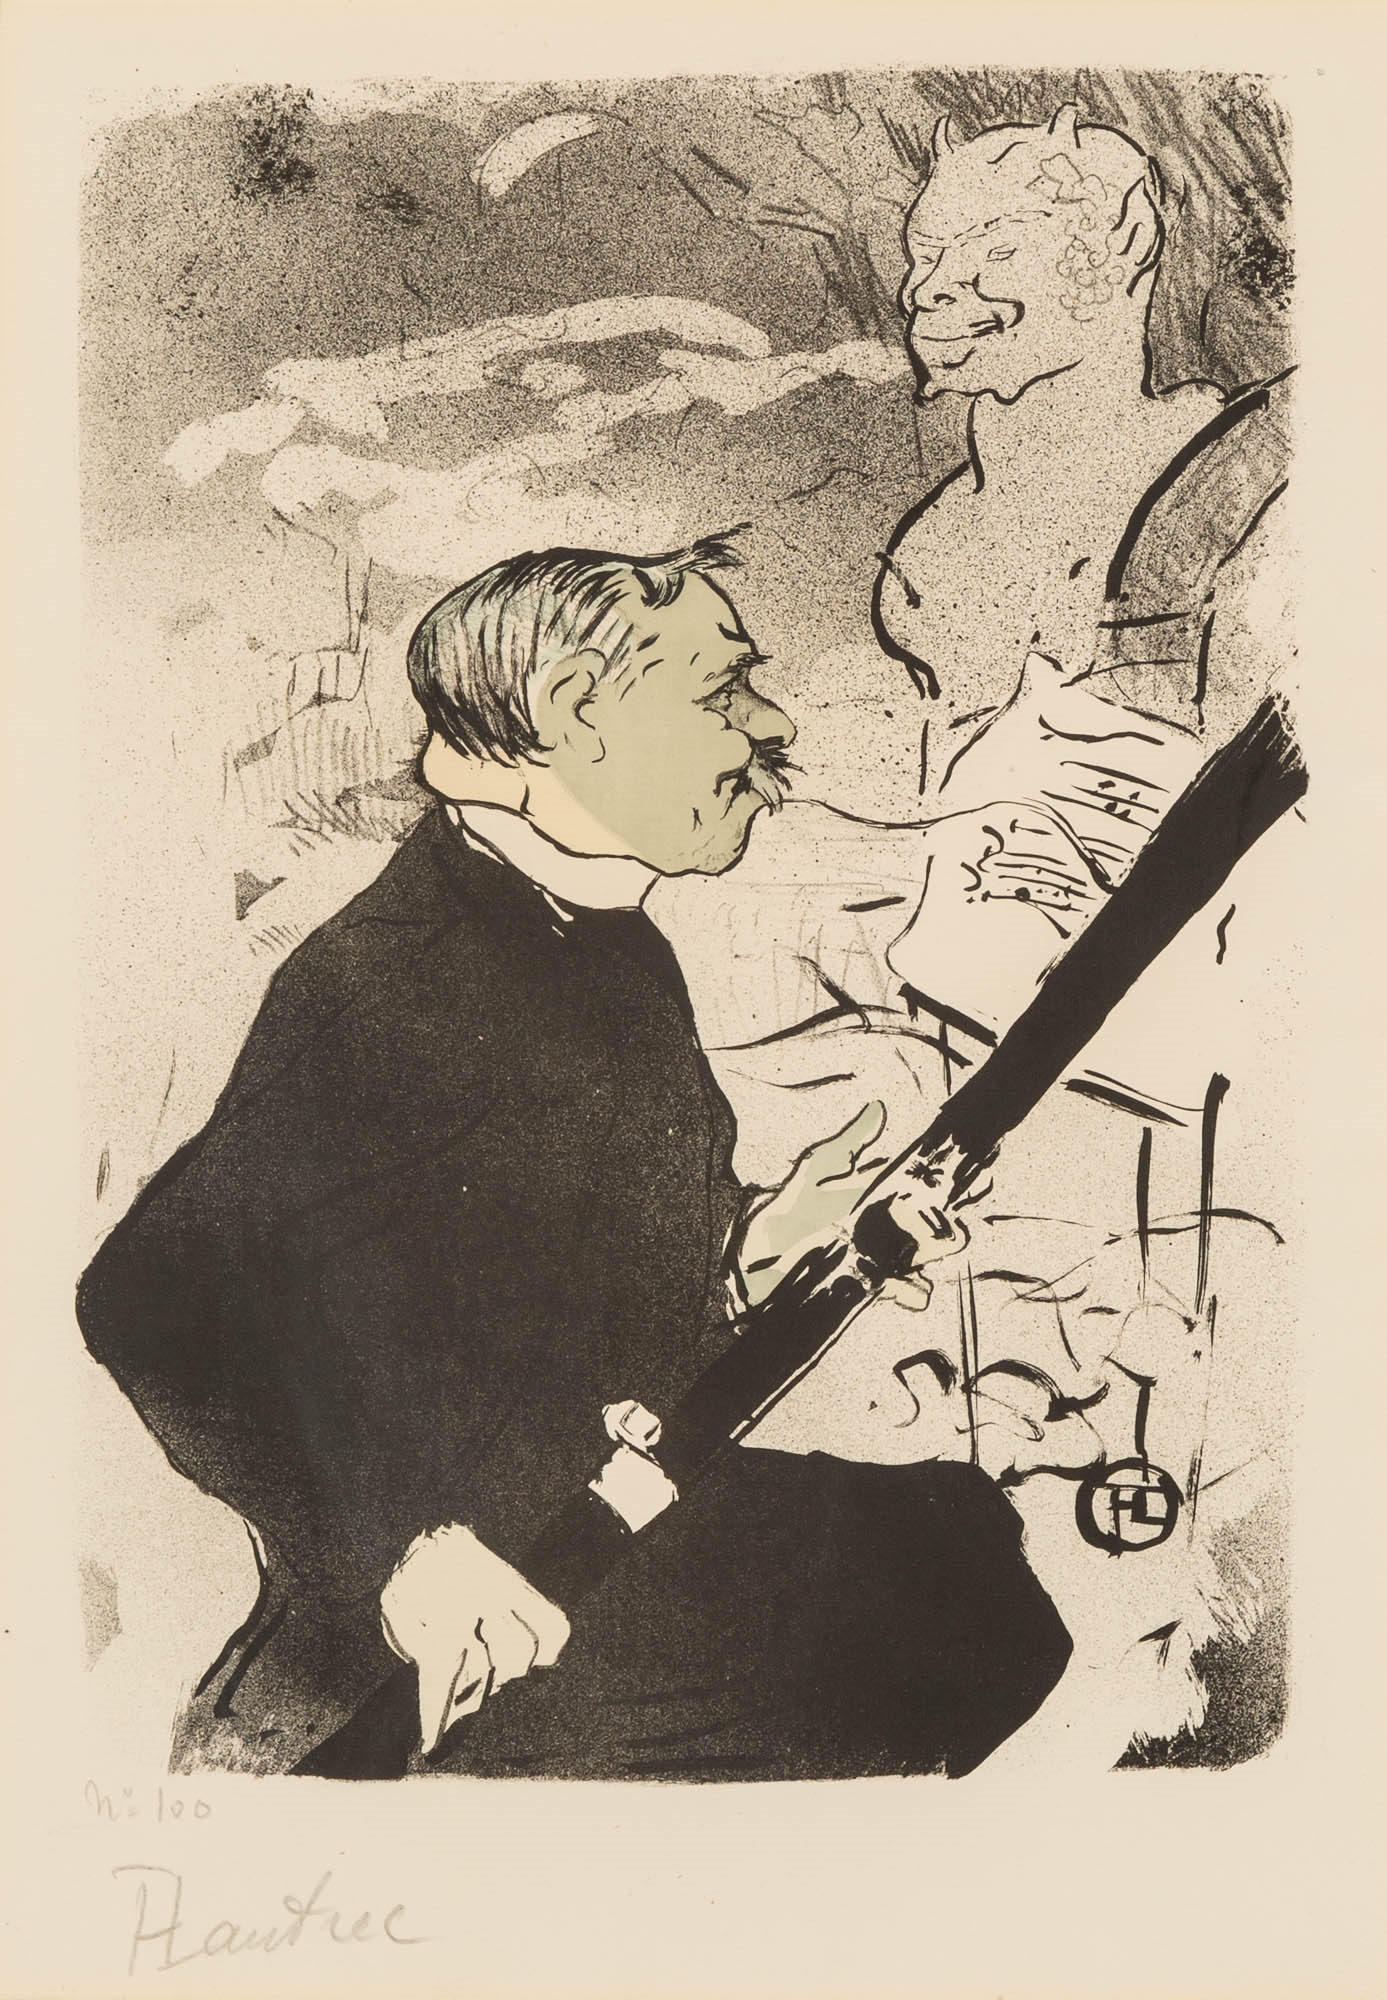 Henri de Toulouse Lautrec (1864-1901 - Henri de Toulouse-Lautrec